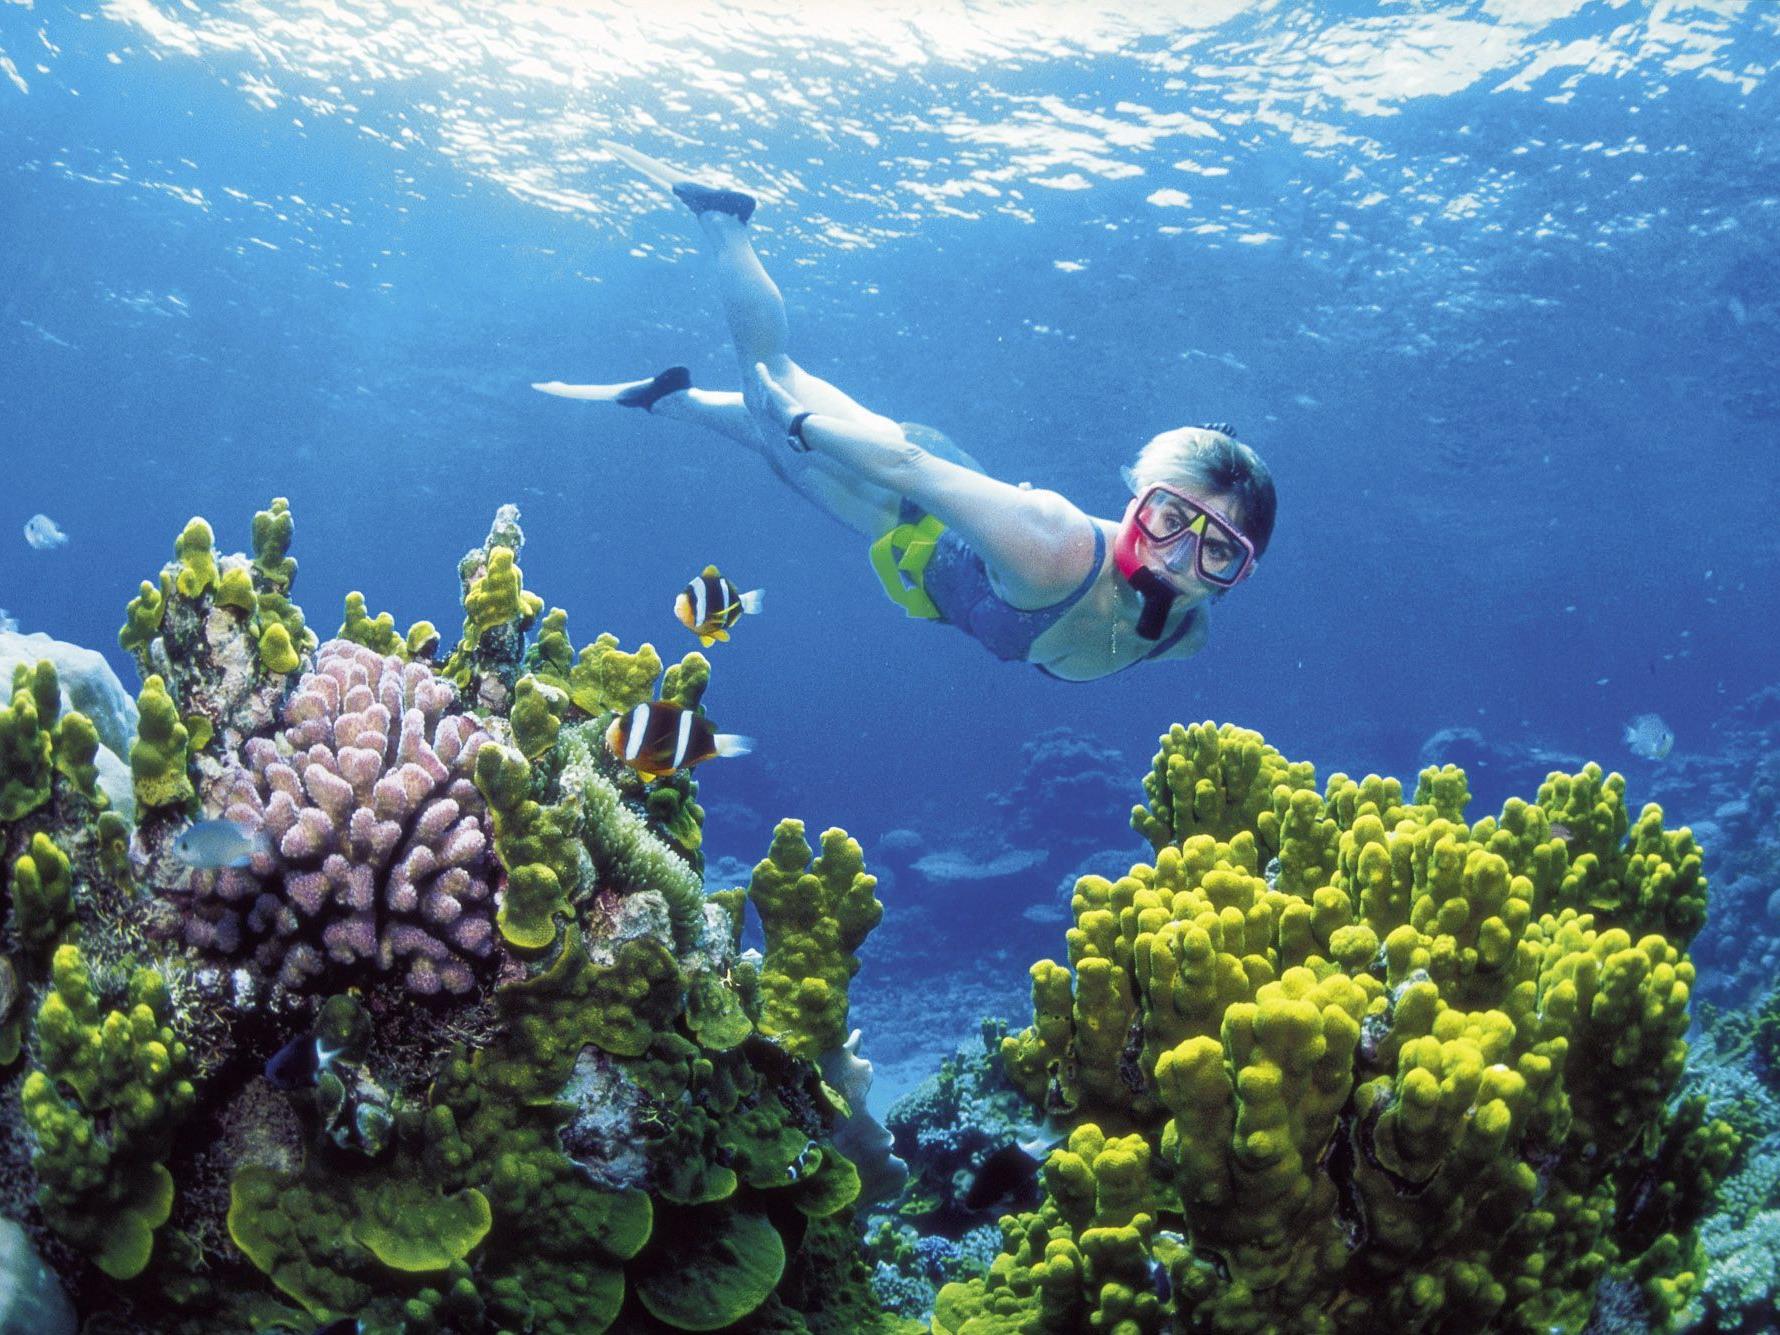 Naturjuwel Great Barrier Reef massiv vom Klimawandel bedroht.